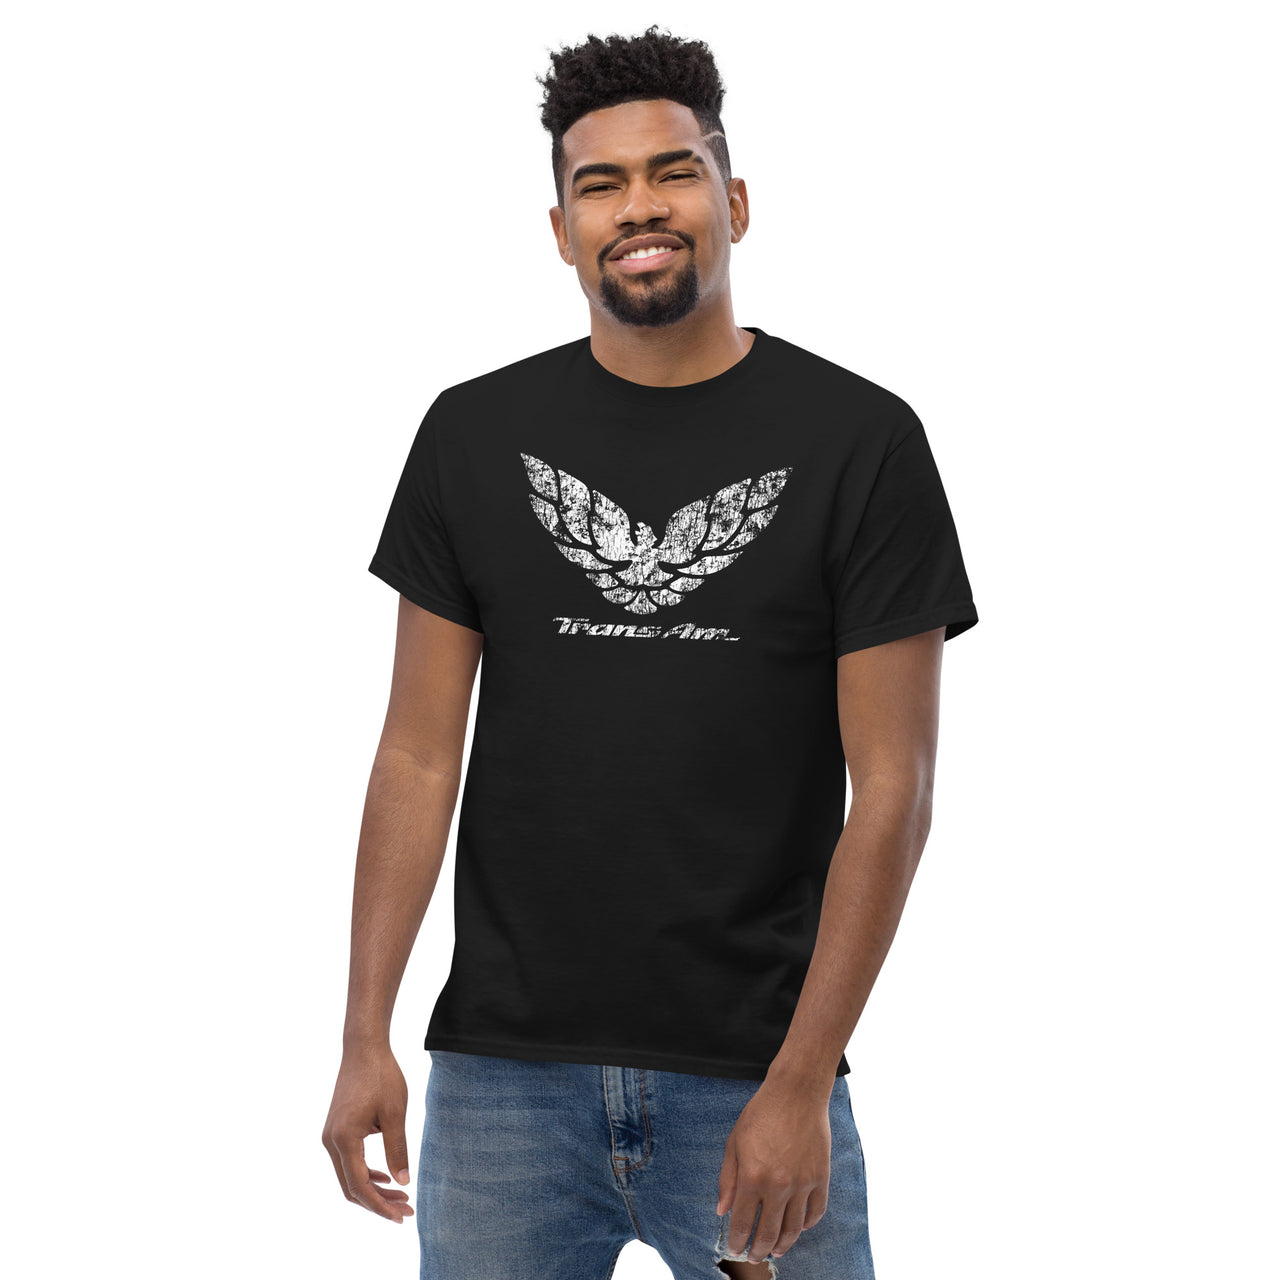 90s Trans Am Firebird Logo T-Shirt modeled in black